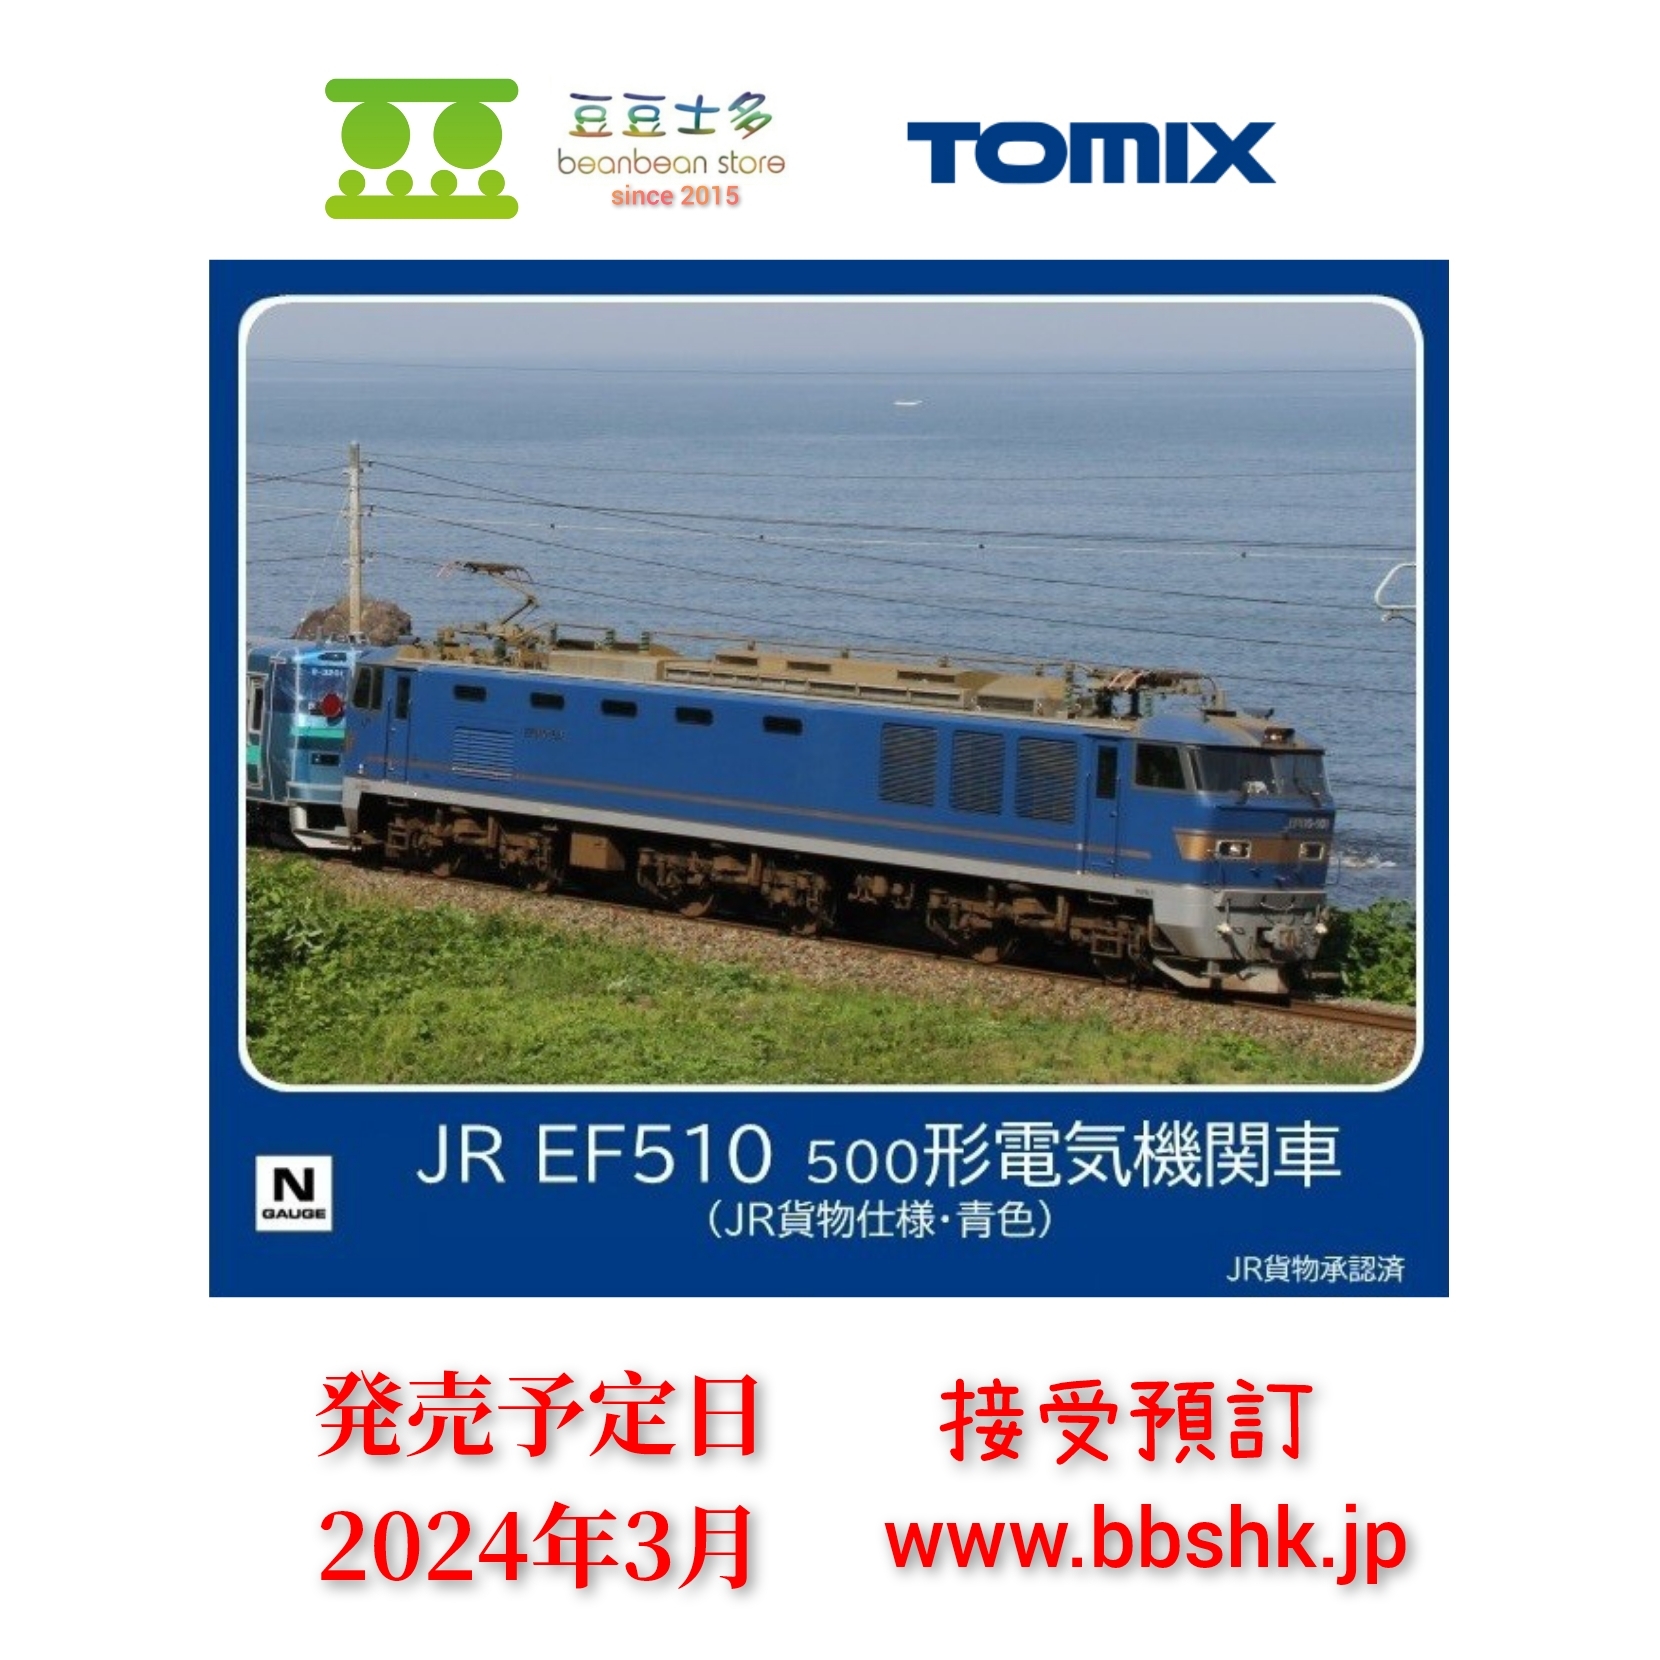 トミックス (N) 7183 JR EF510-500形電気機関車(JR貨物仕様・銀色